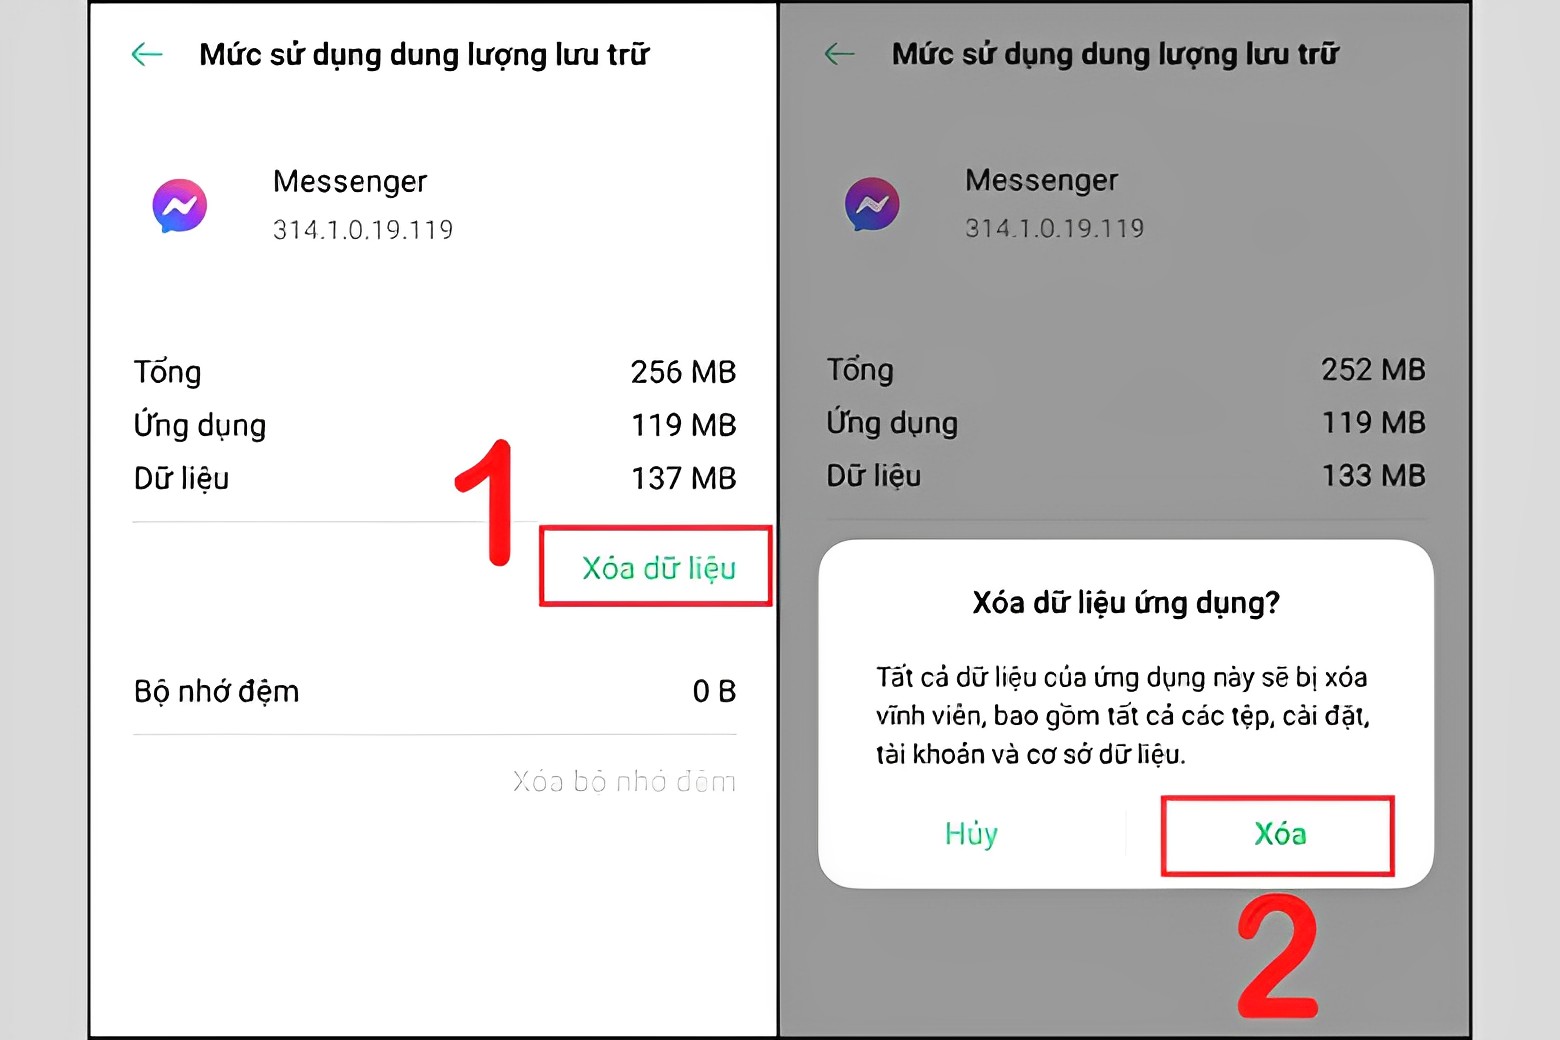 Xóa dữ liệu ứng dụng khắc phục lỗi ở Messenger